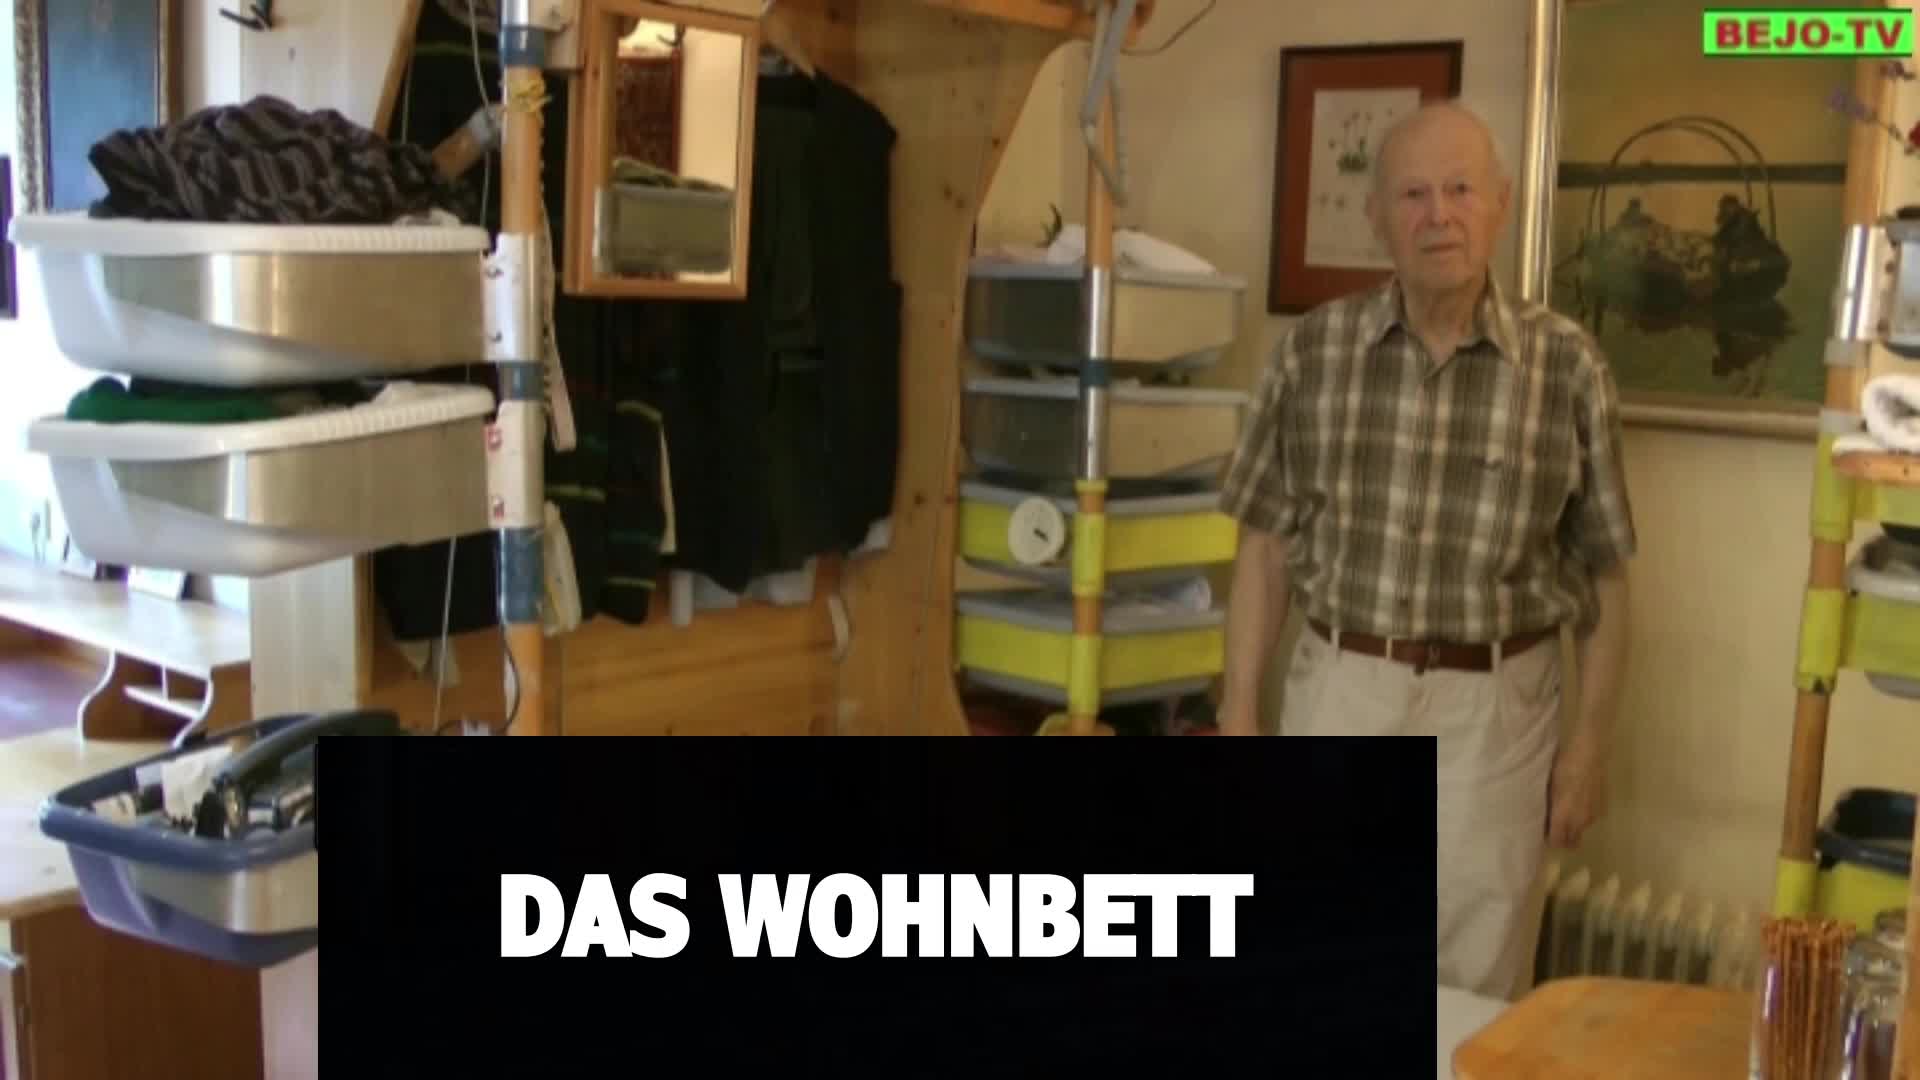 Dr. Karl Kaltenböck - Erfinder eines Wohnbetts